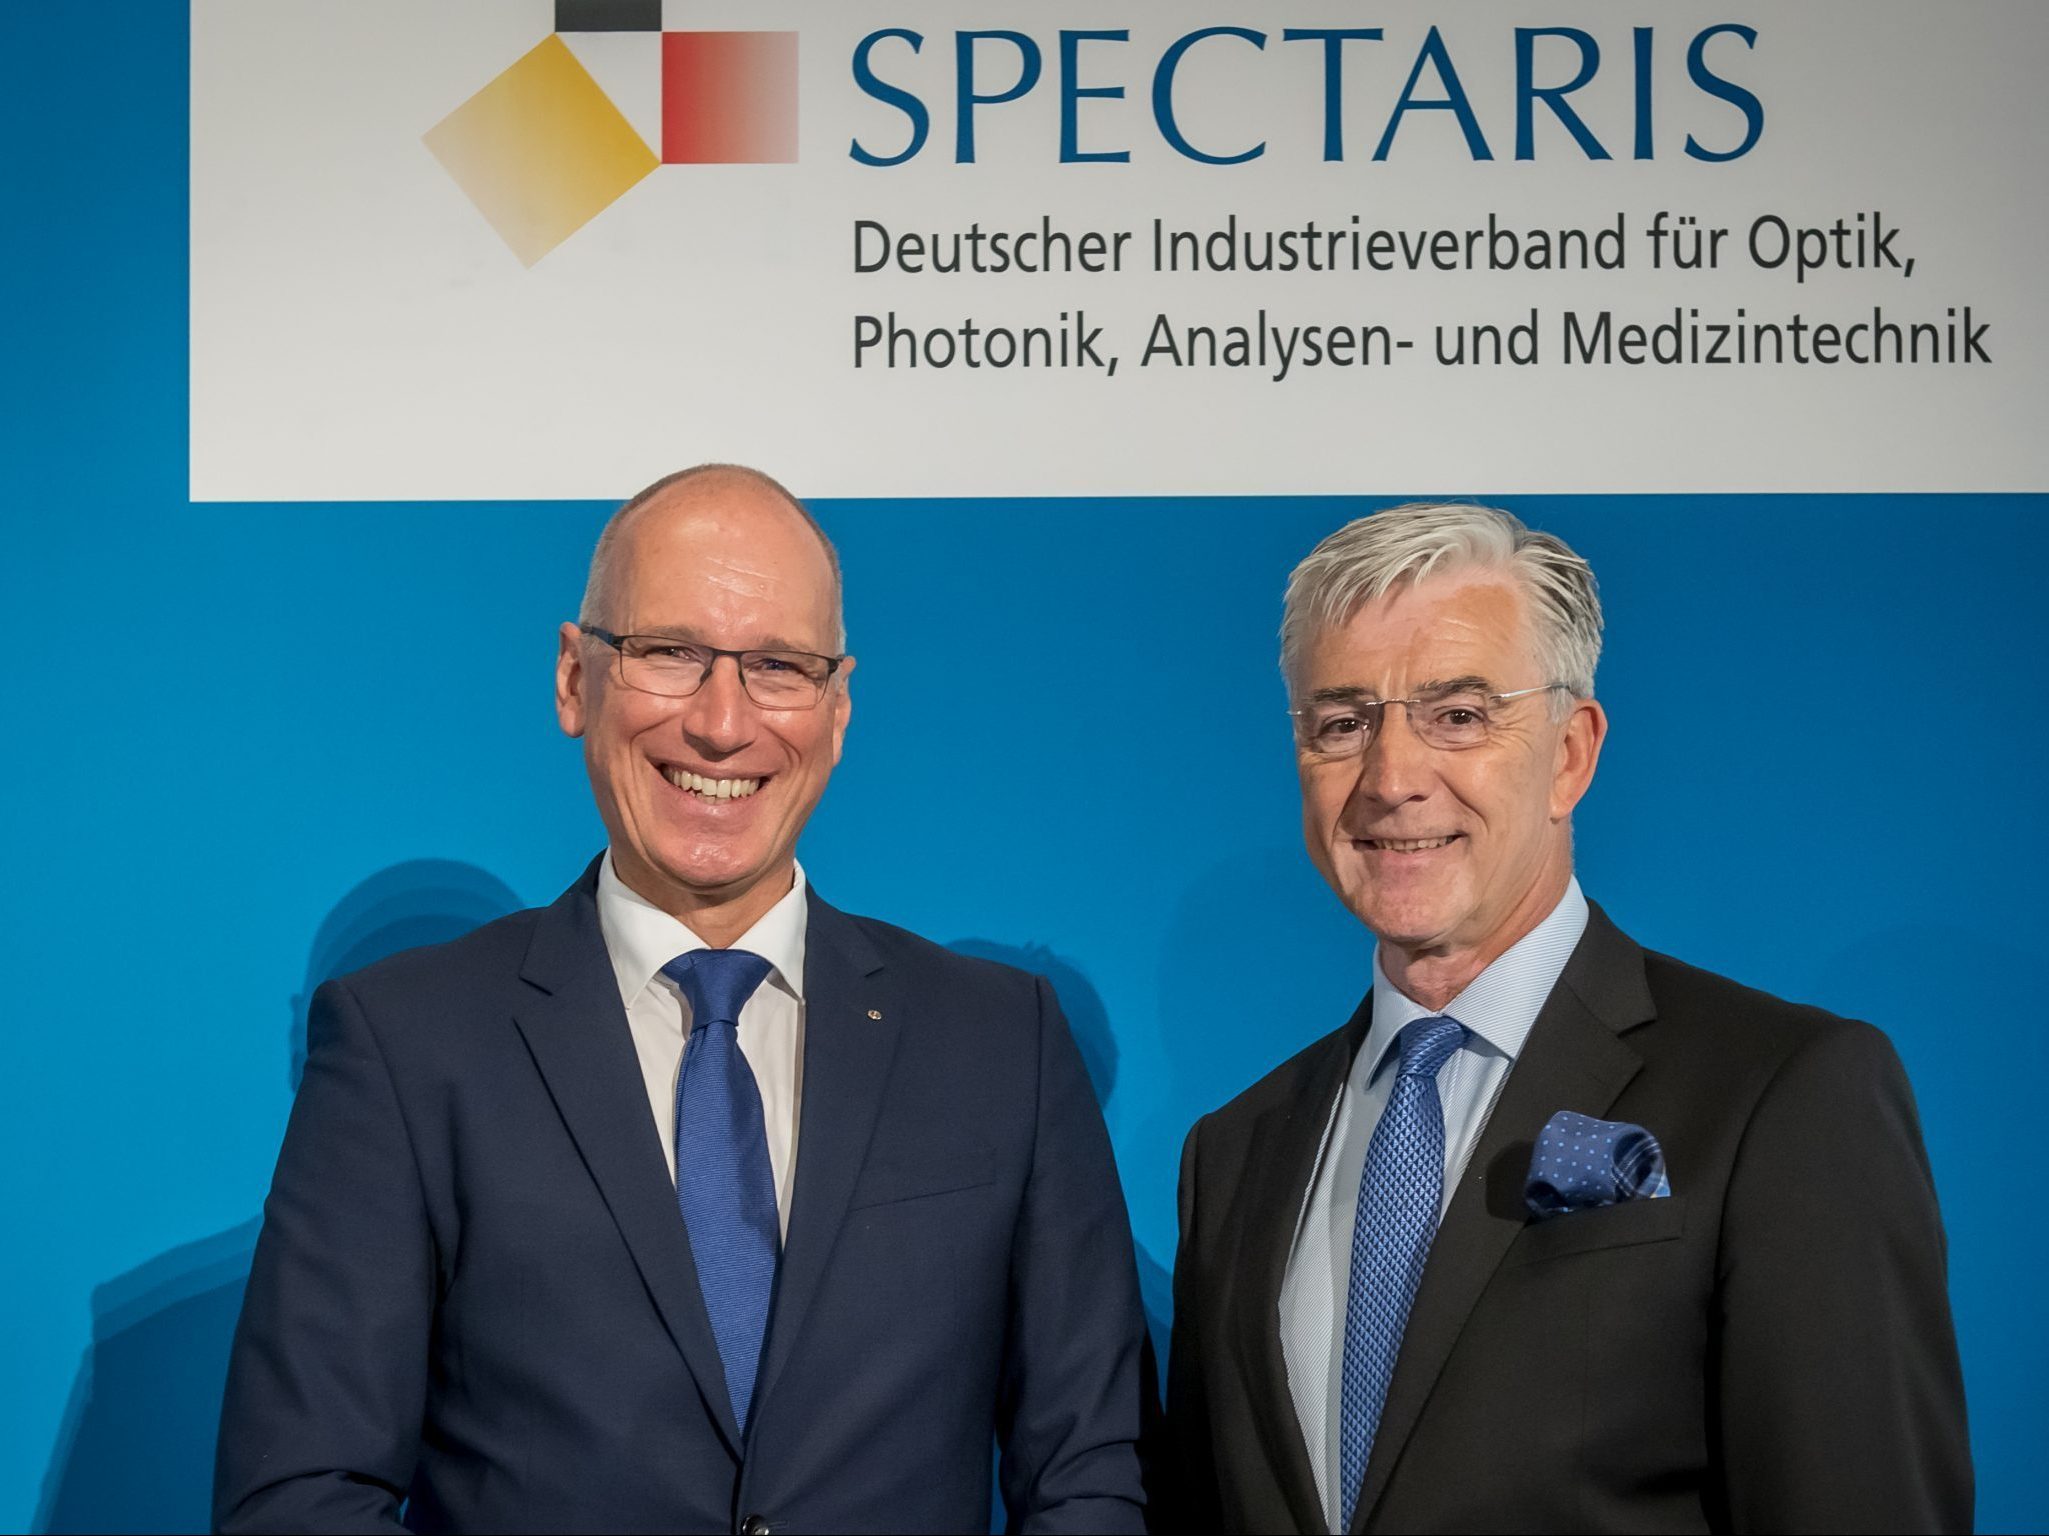 Der neue Spectaris-Vorsitzende Ulrich Krauss mit seinem Vorgänger Josef May.